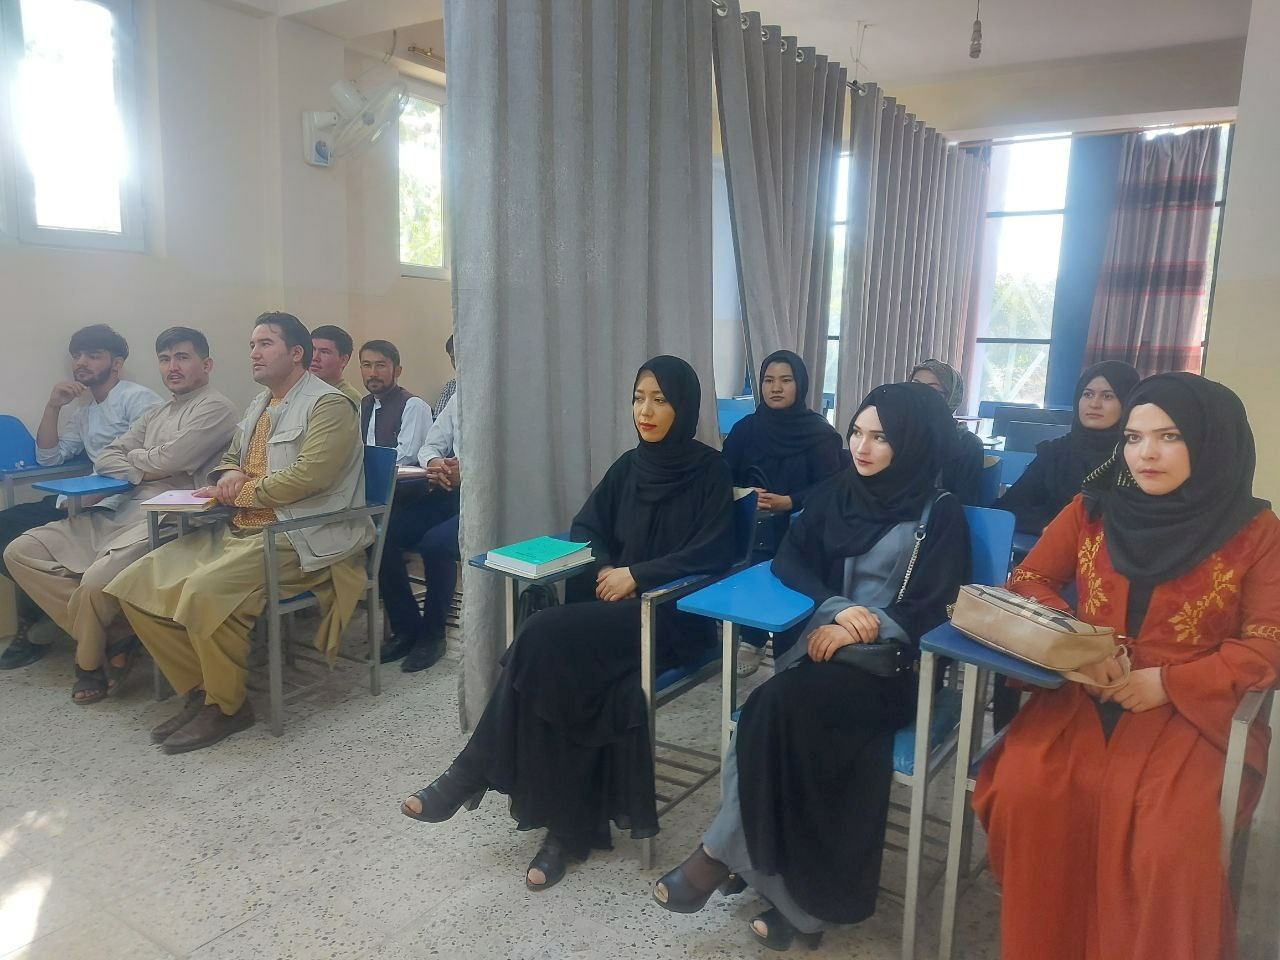 Los estudiantes asisten a clases bajo nuevas condiciones de aula en la Universidad de Avicenna en Kabul, Afganistán (Foto: REUTERS)